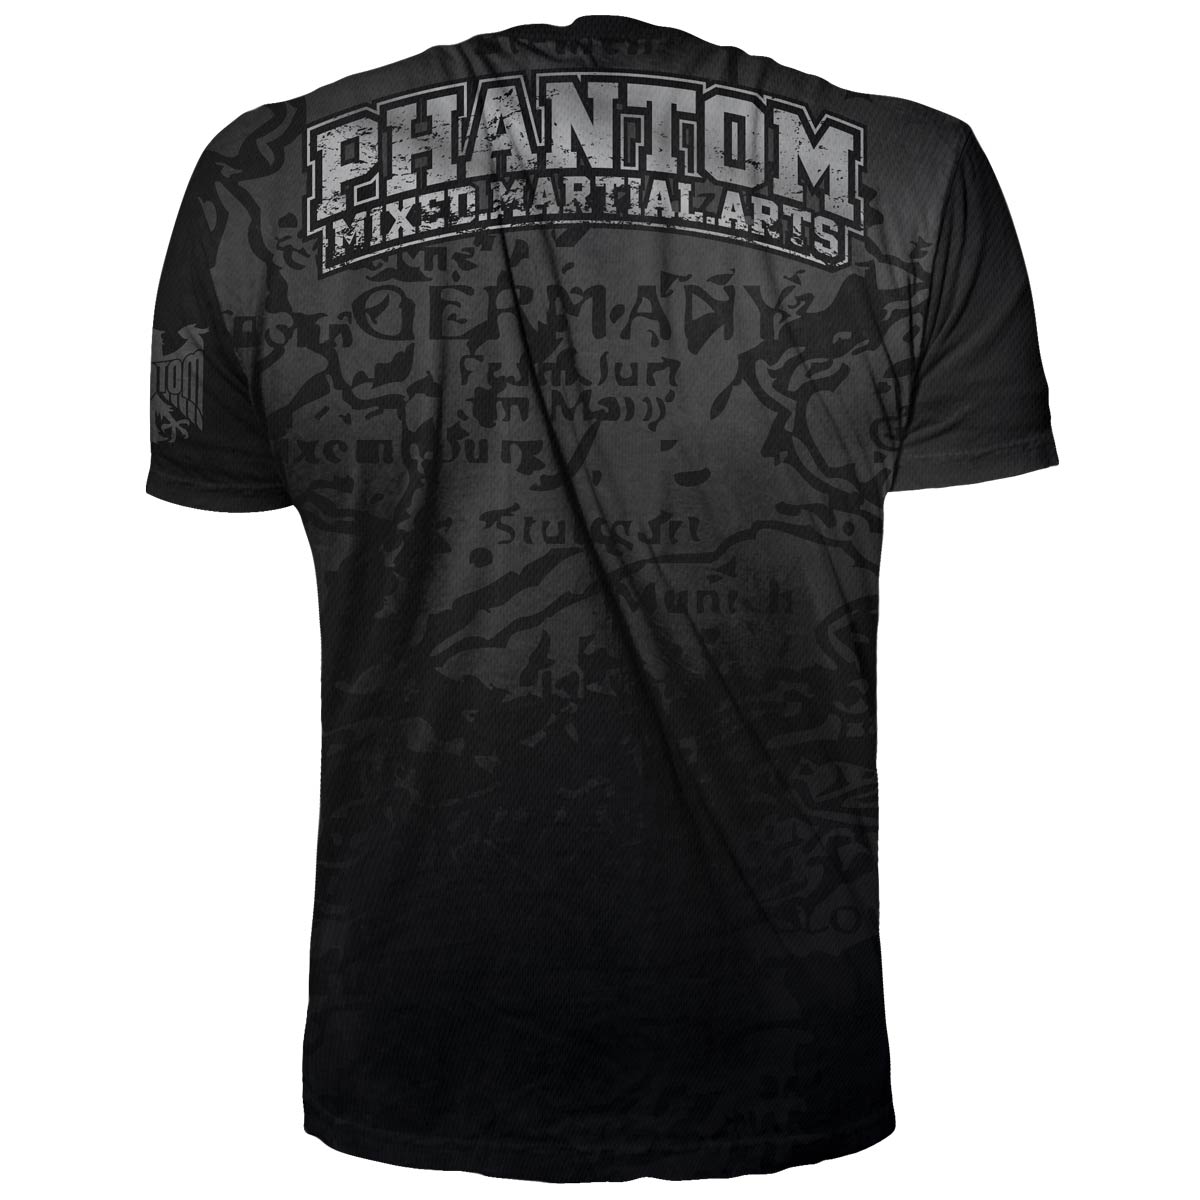 Phantom Trainingsshirt für alle FIghter. Im Germany Design mit Deutschland Adler und Landkarte. Ideal für dein Muay Thai, MMA oder Kickbox Training.